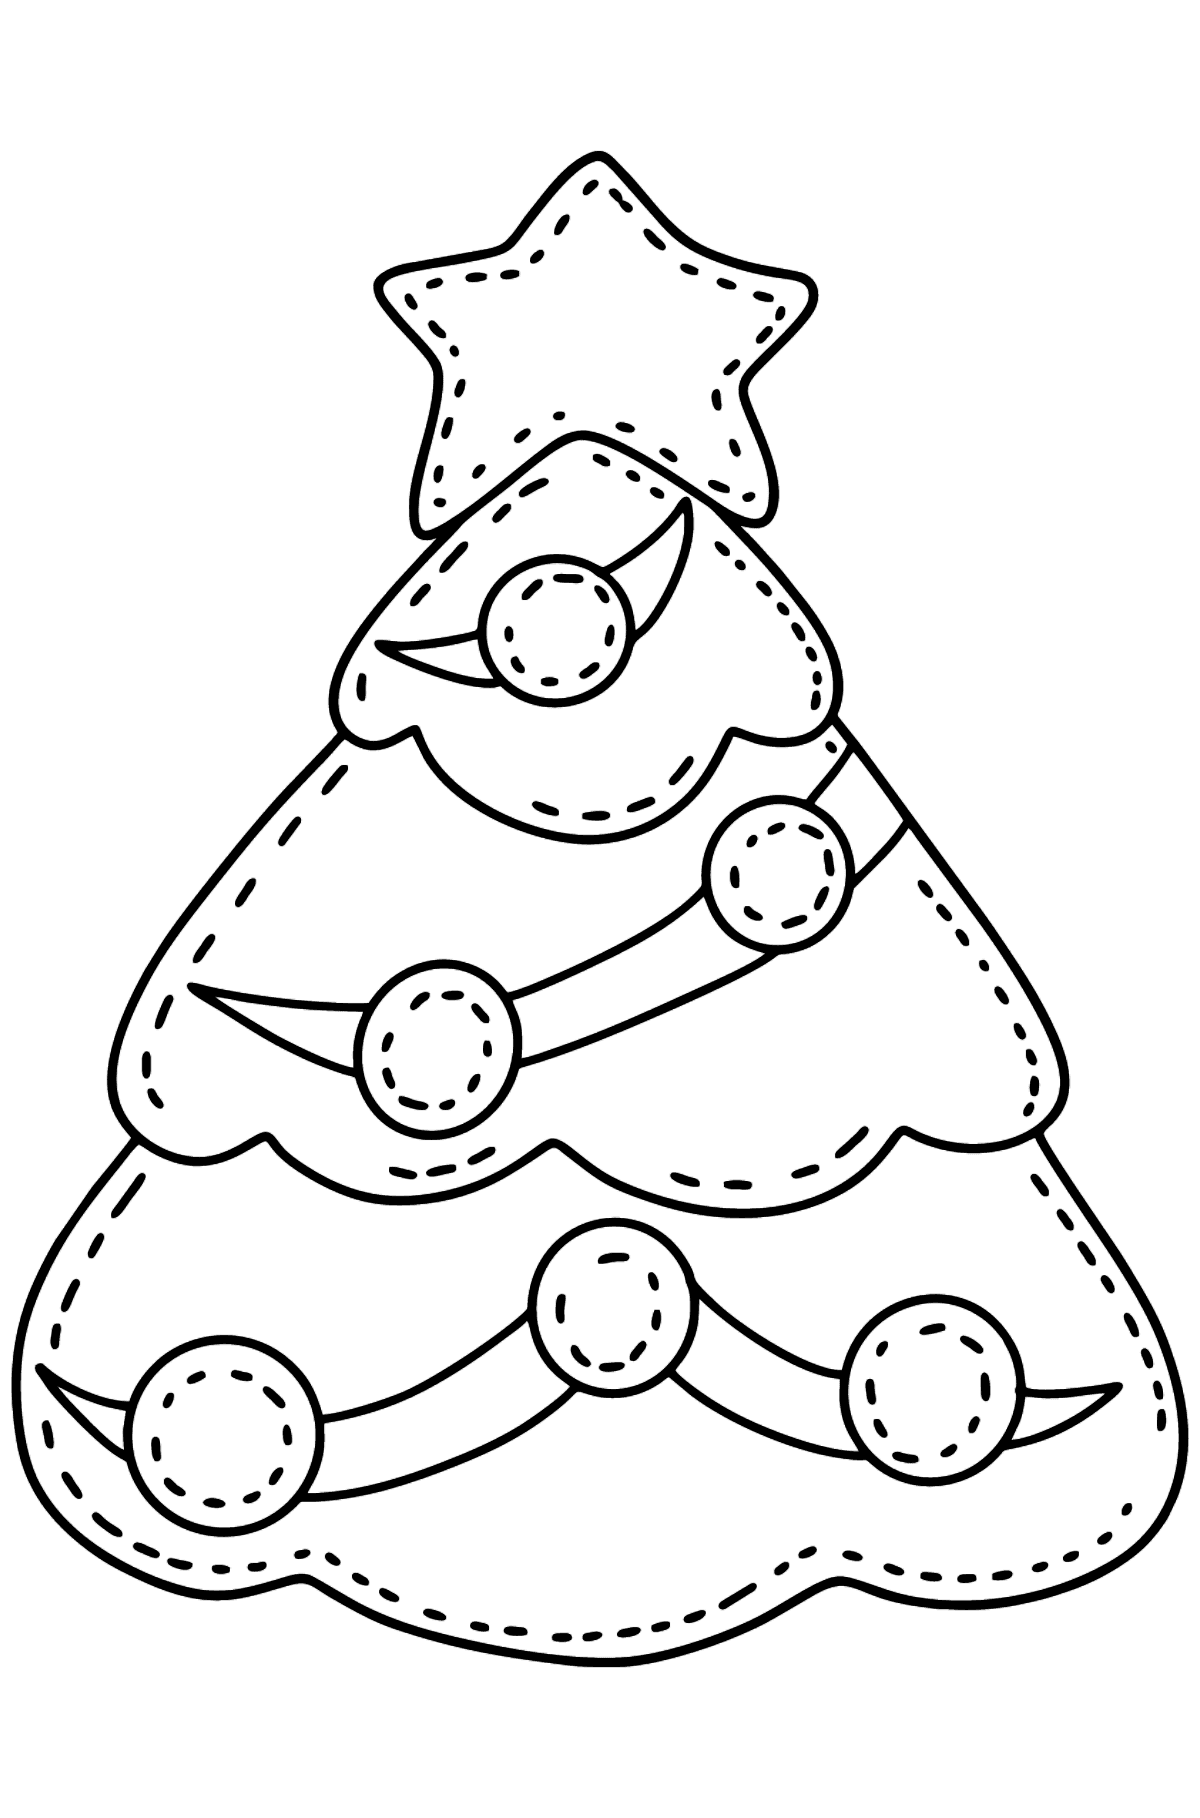 Desenho para colorir da árvore de Natal de feltro - Imagens para Colorir para Crianças